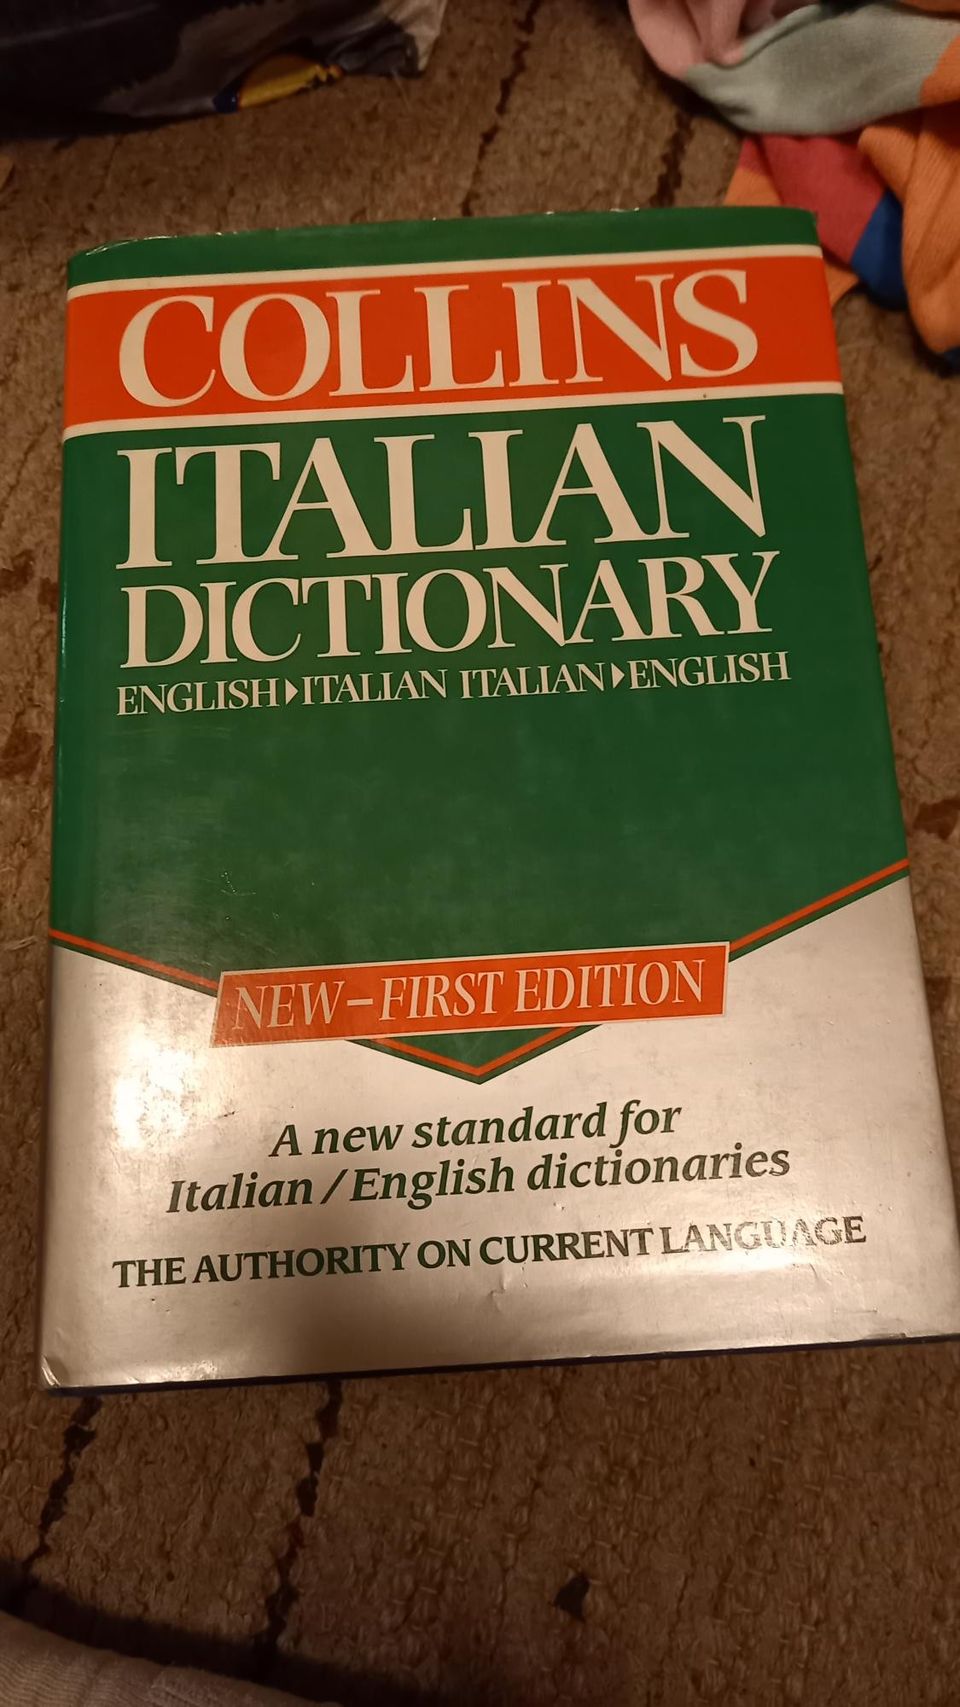 Englanti-Italia-Englanti sanakirja